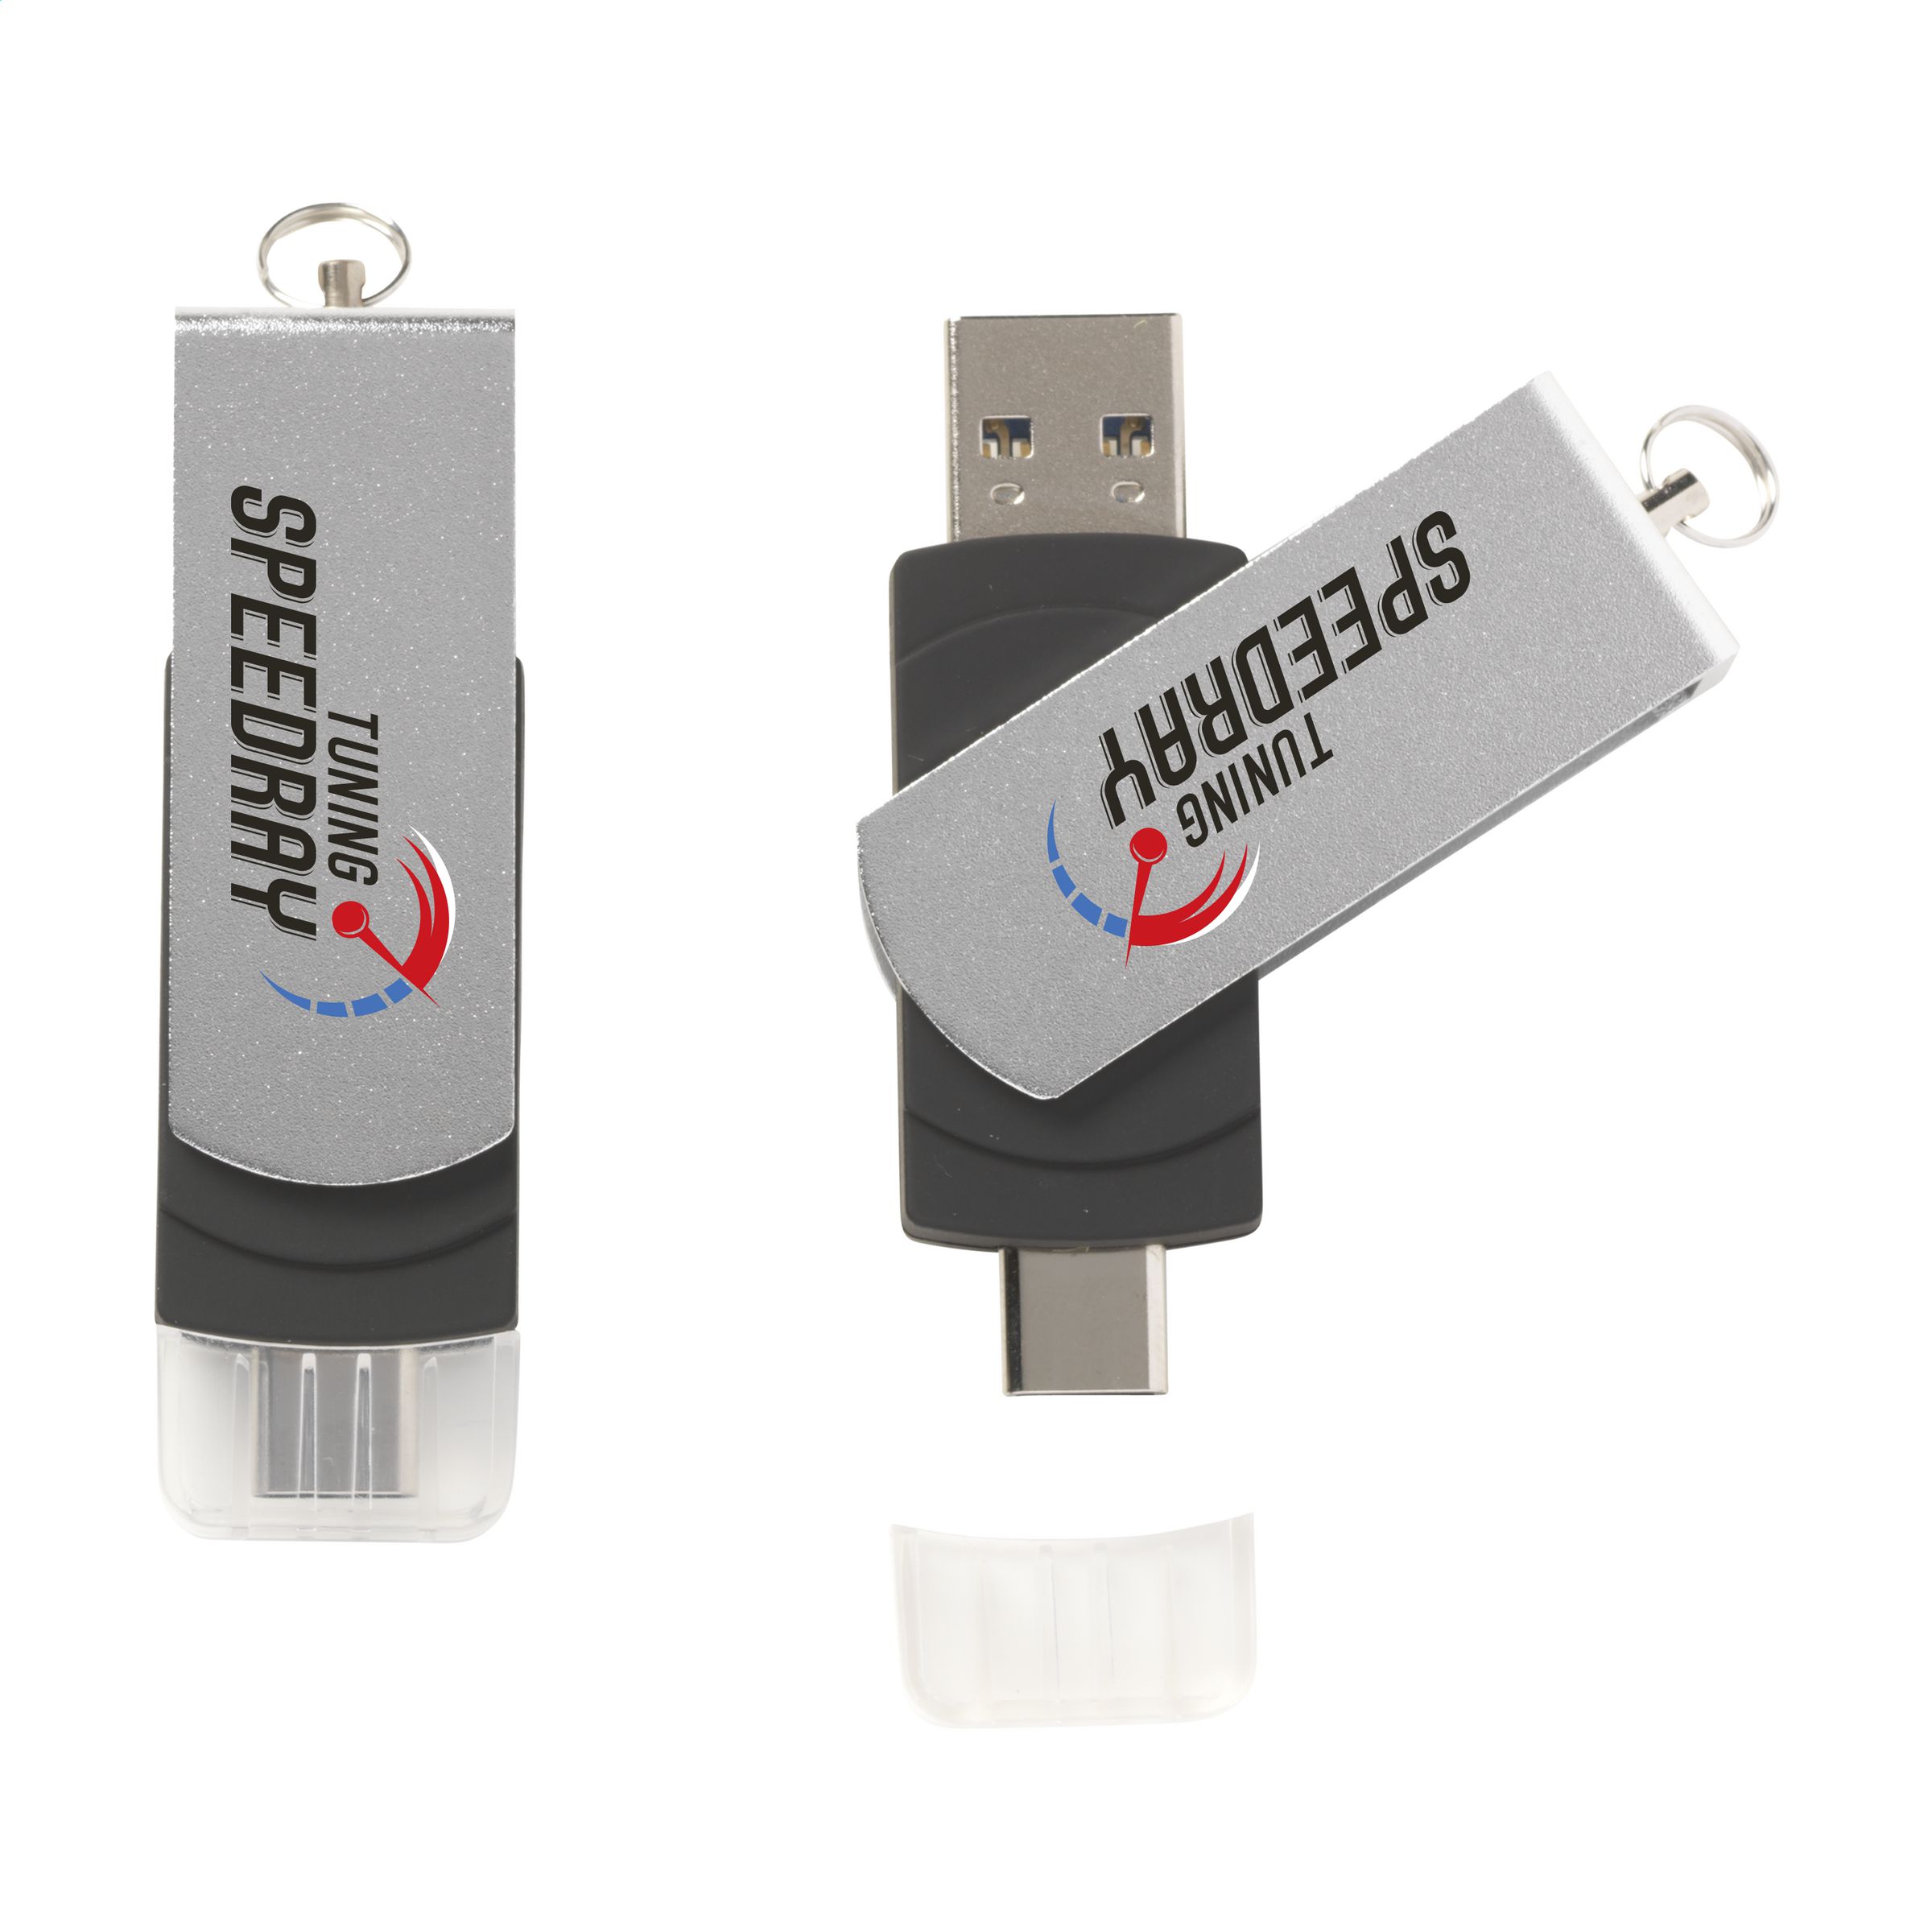 Clé USB à double connecteur - Courchevel - Zaprinta France